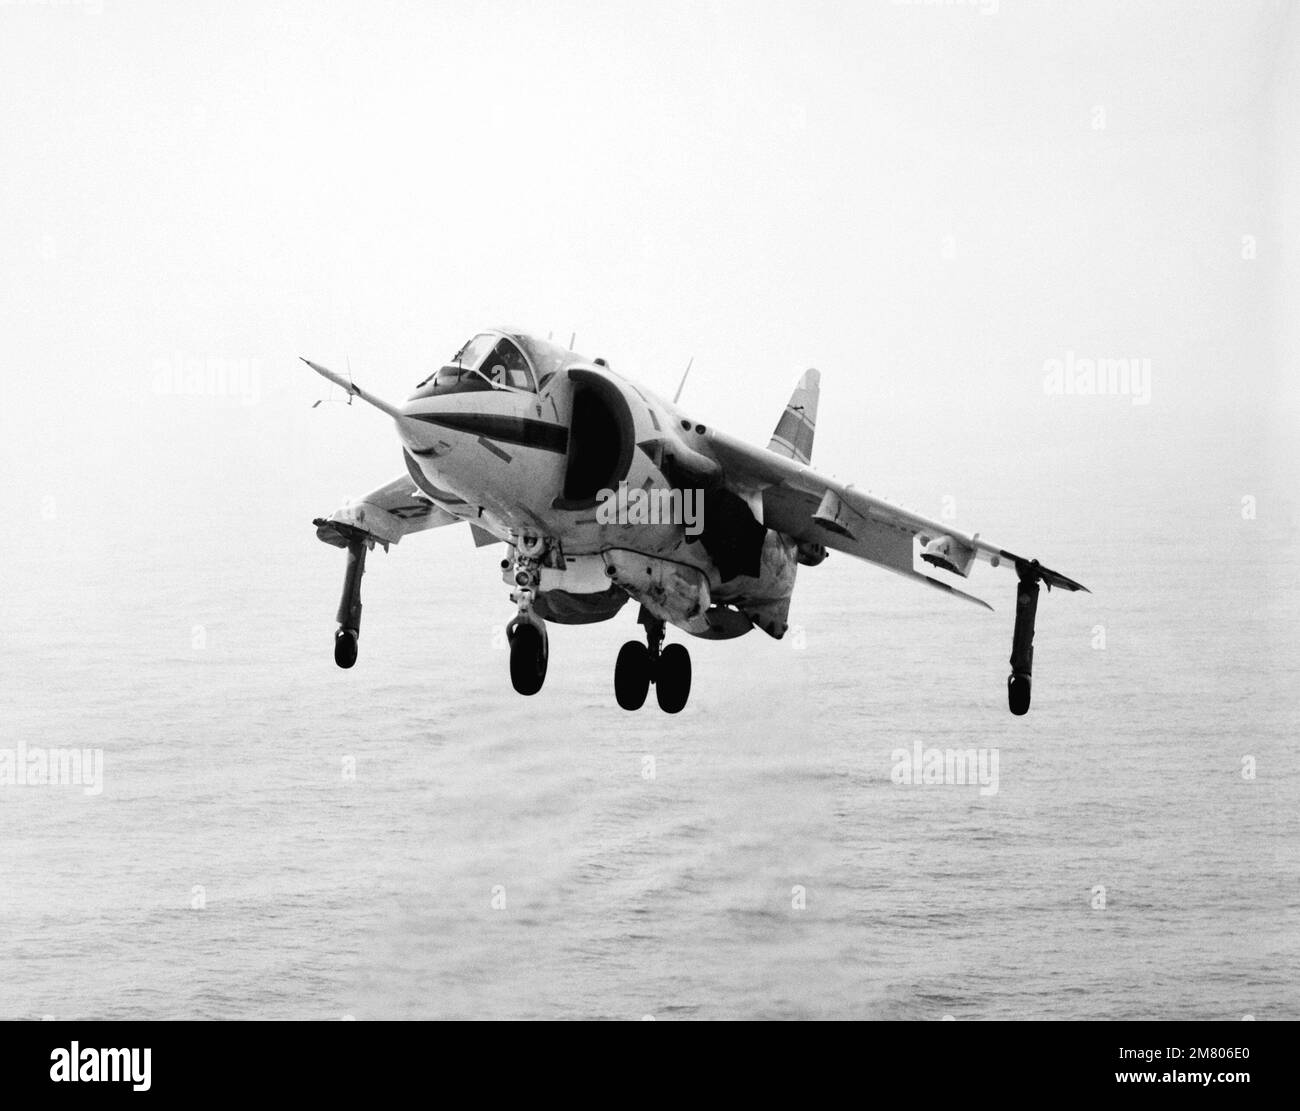 Vista frontale sinistra di un aeromobile AV-8C Harrier verticale/a decollo e atterraggio corto (V/STOL). La Harrier, prodotta da McDonnell-Douglas, Inc., è sottoposta a un programma di test e valutazione. Paese: Sconosciuto Foto Stock